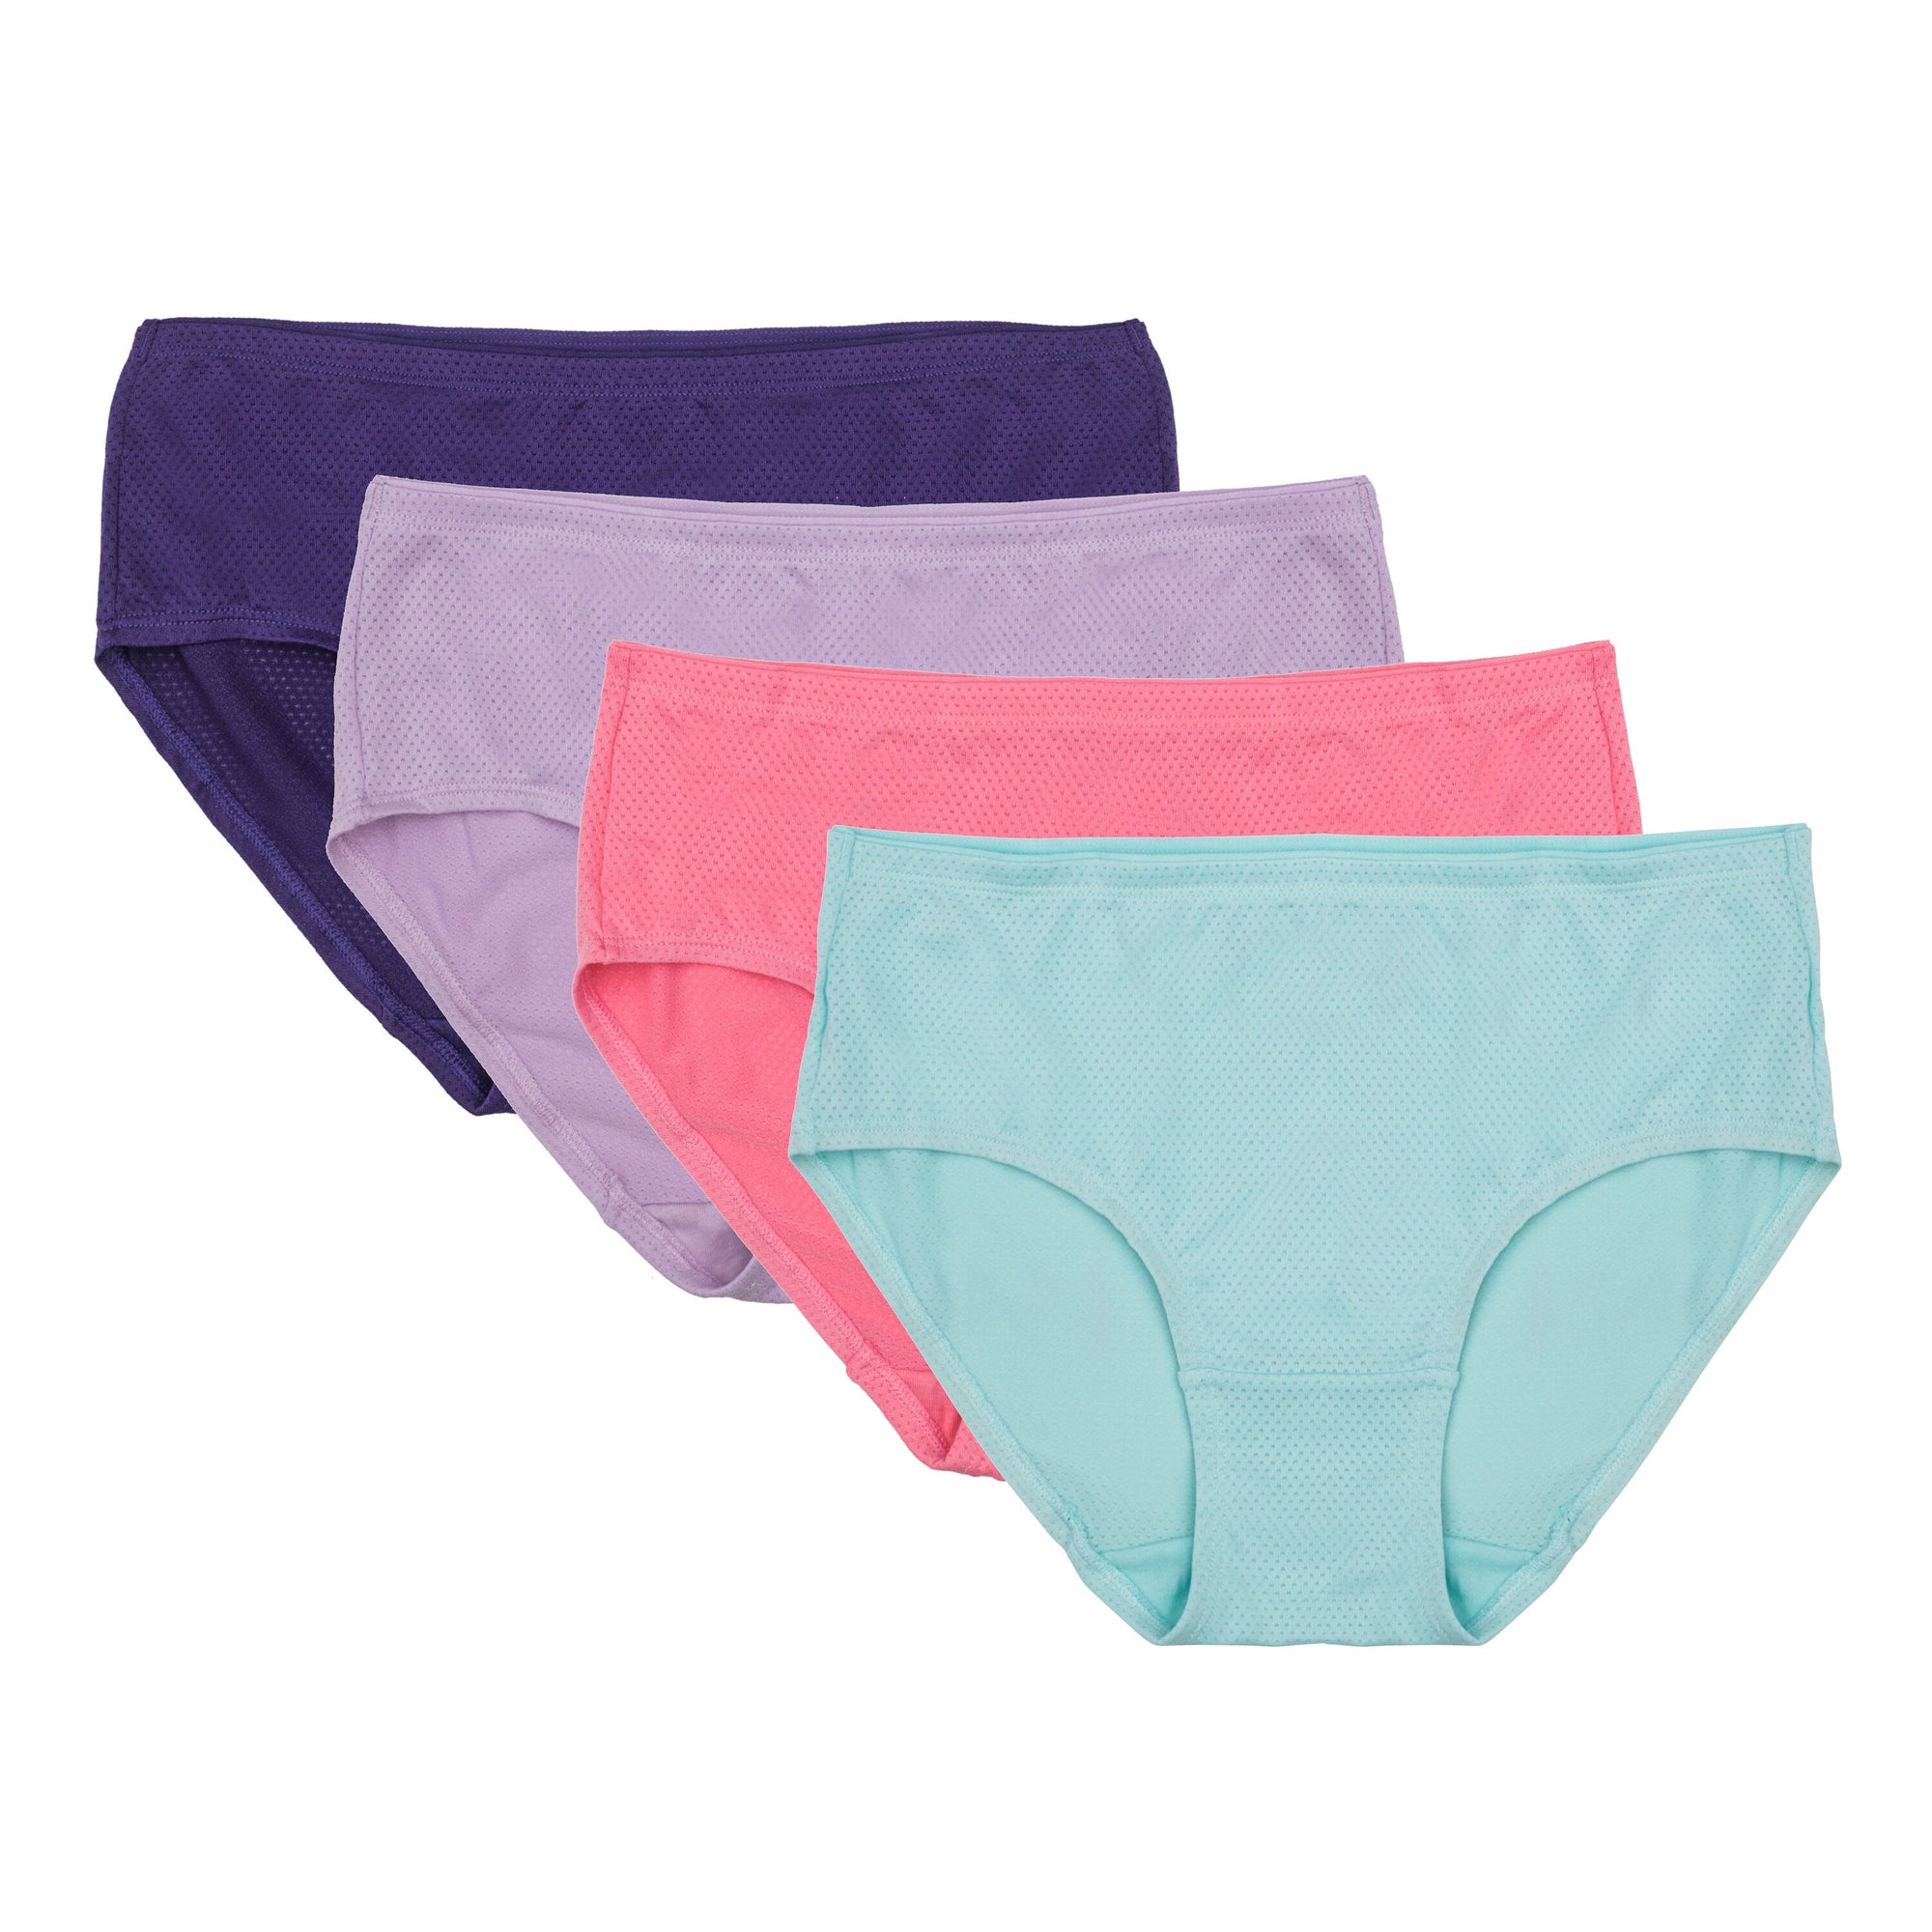  Fruit Of The Loom Womens Underwear Breathable Panties  (Regular & Plus